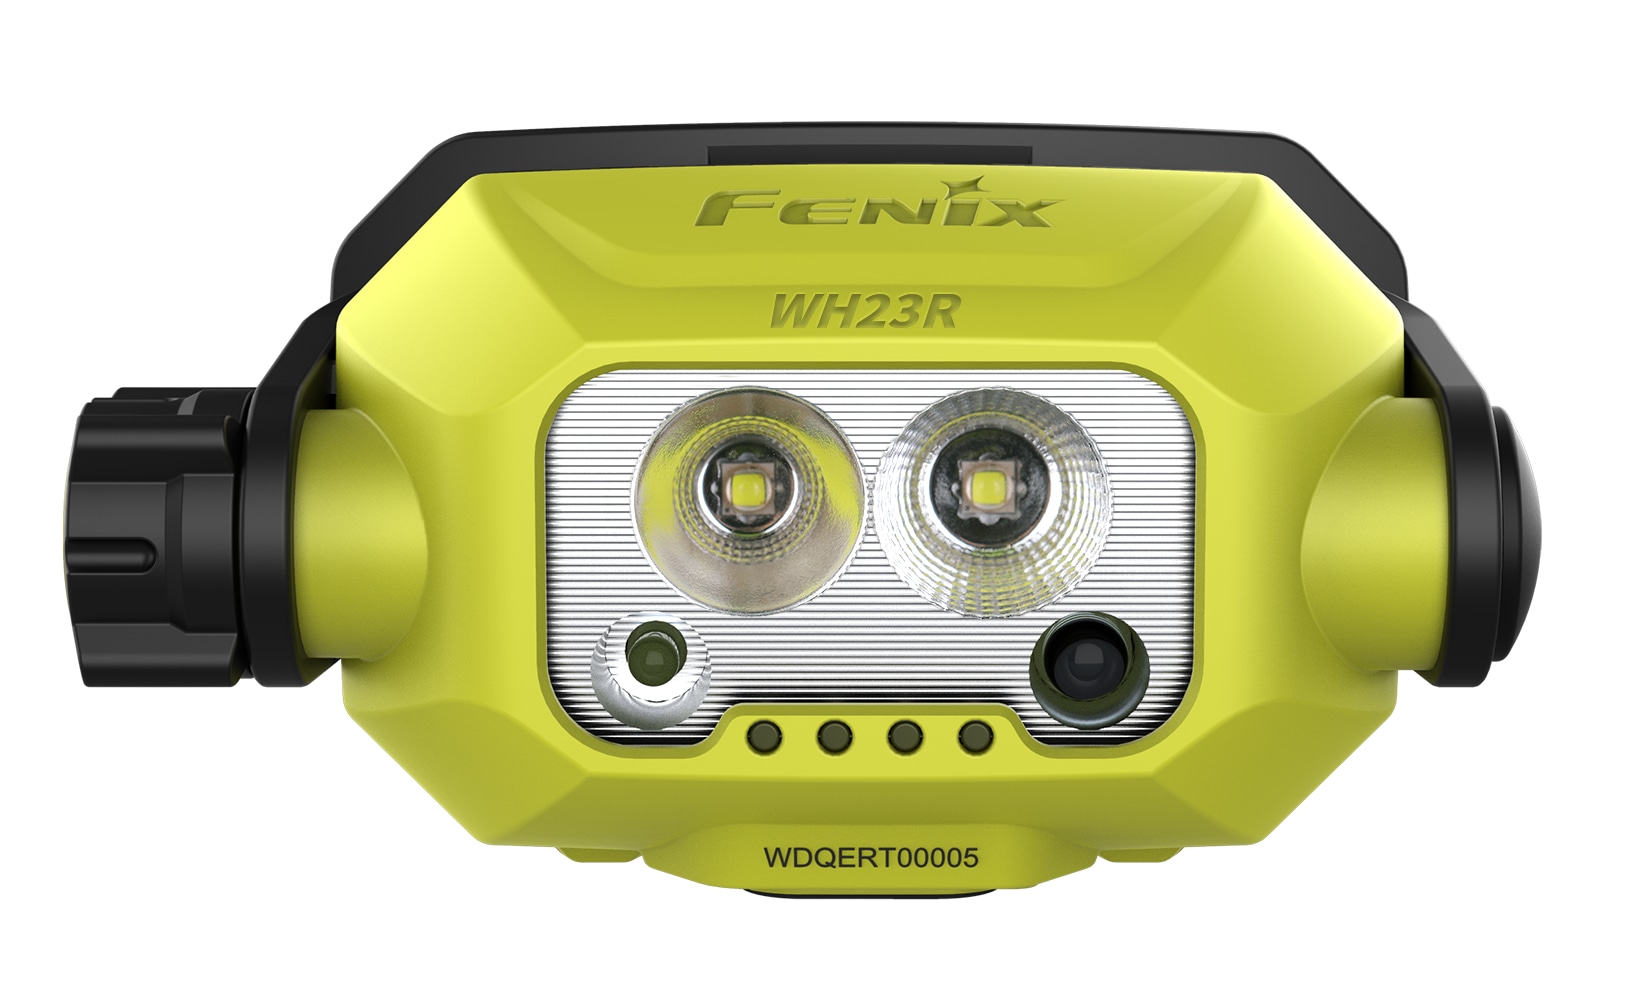 FENIX LED-Stirnlampe, WH23R,600 Lumen, wiederaufladbar